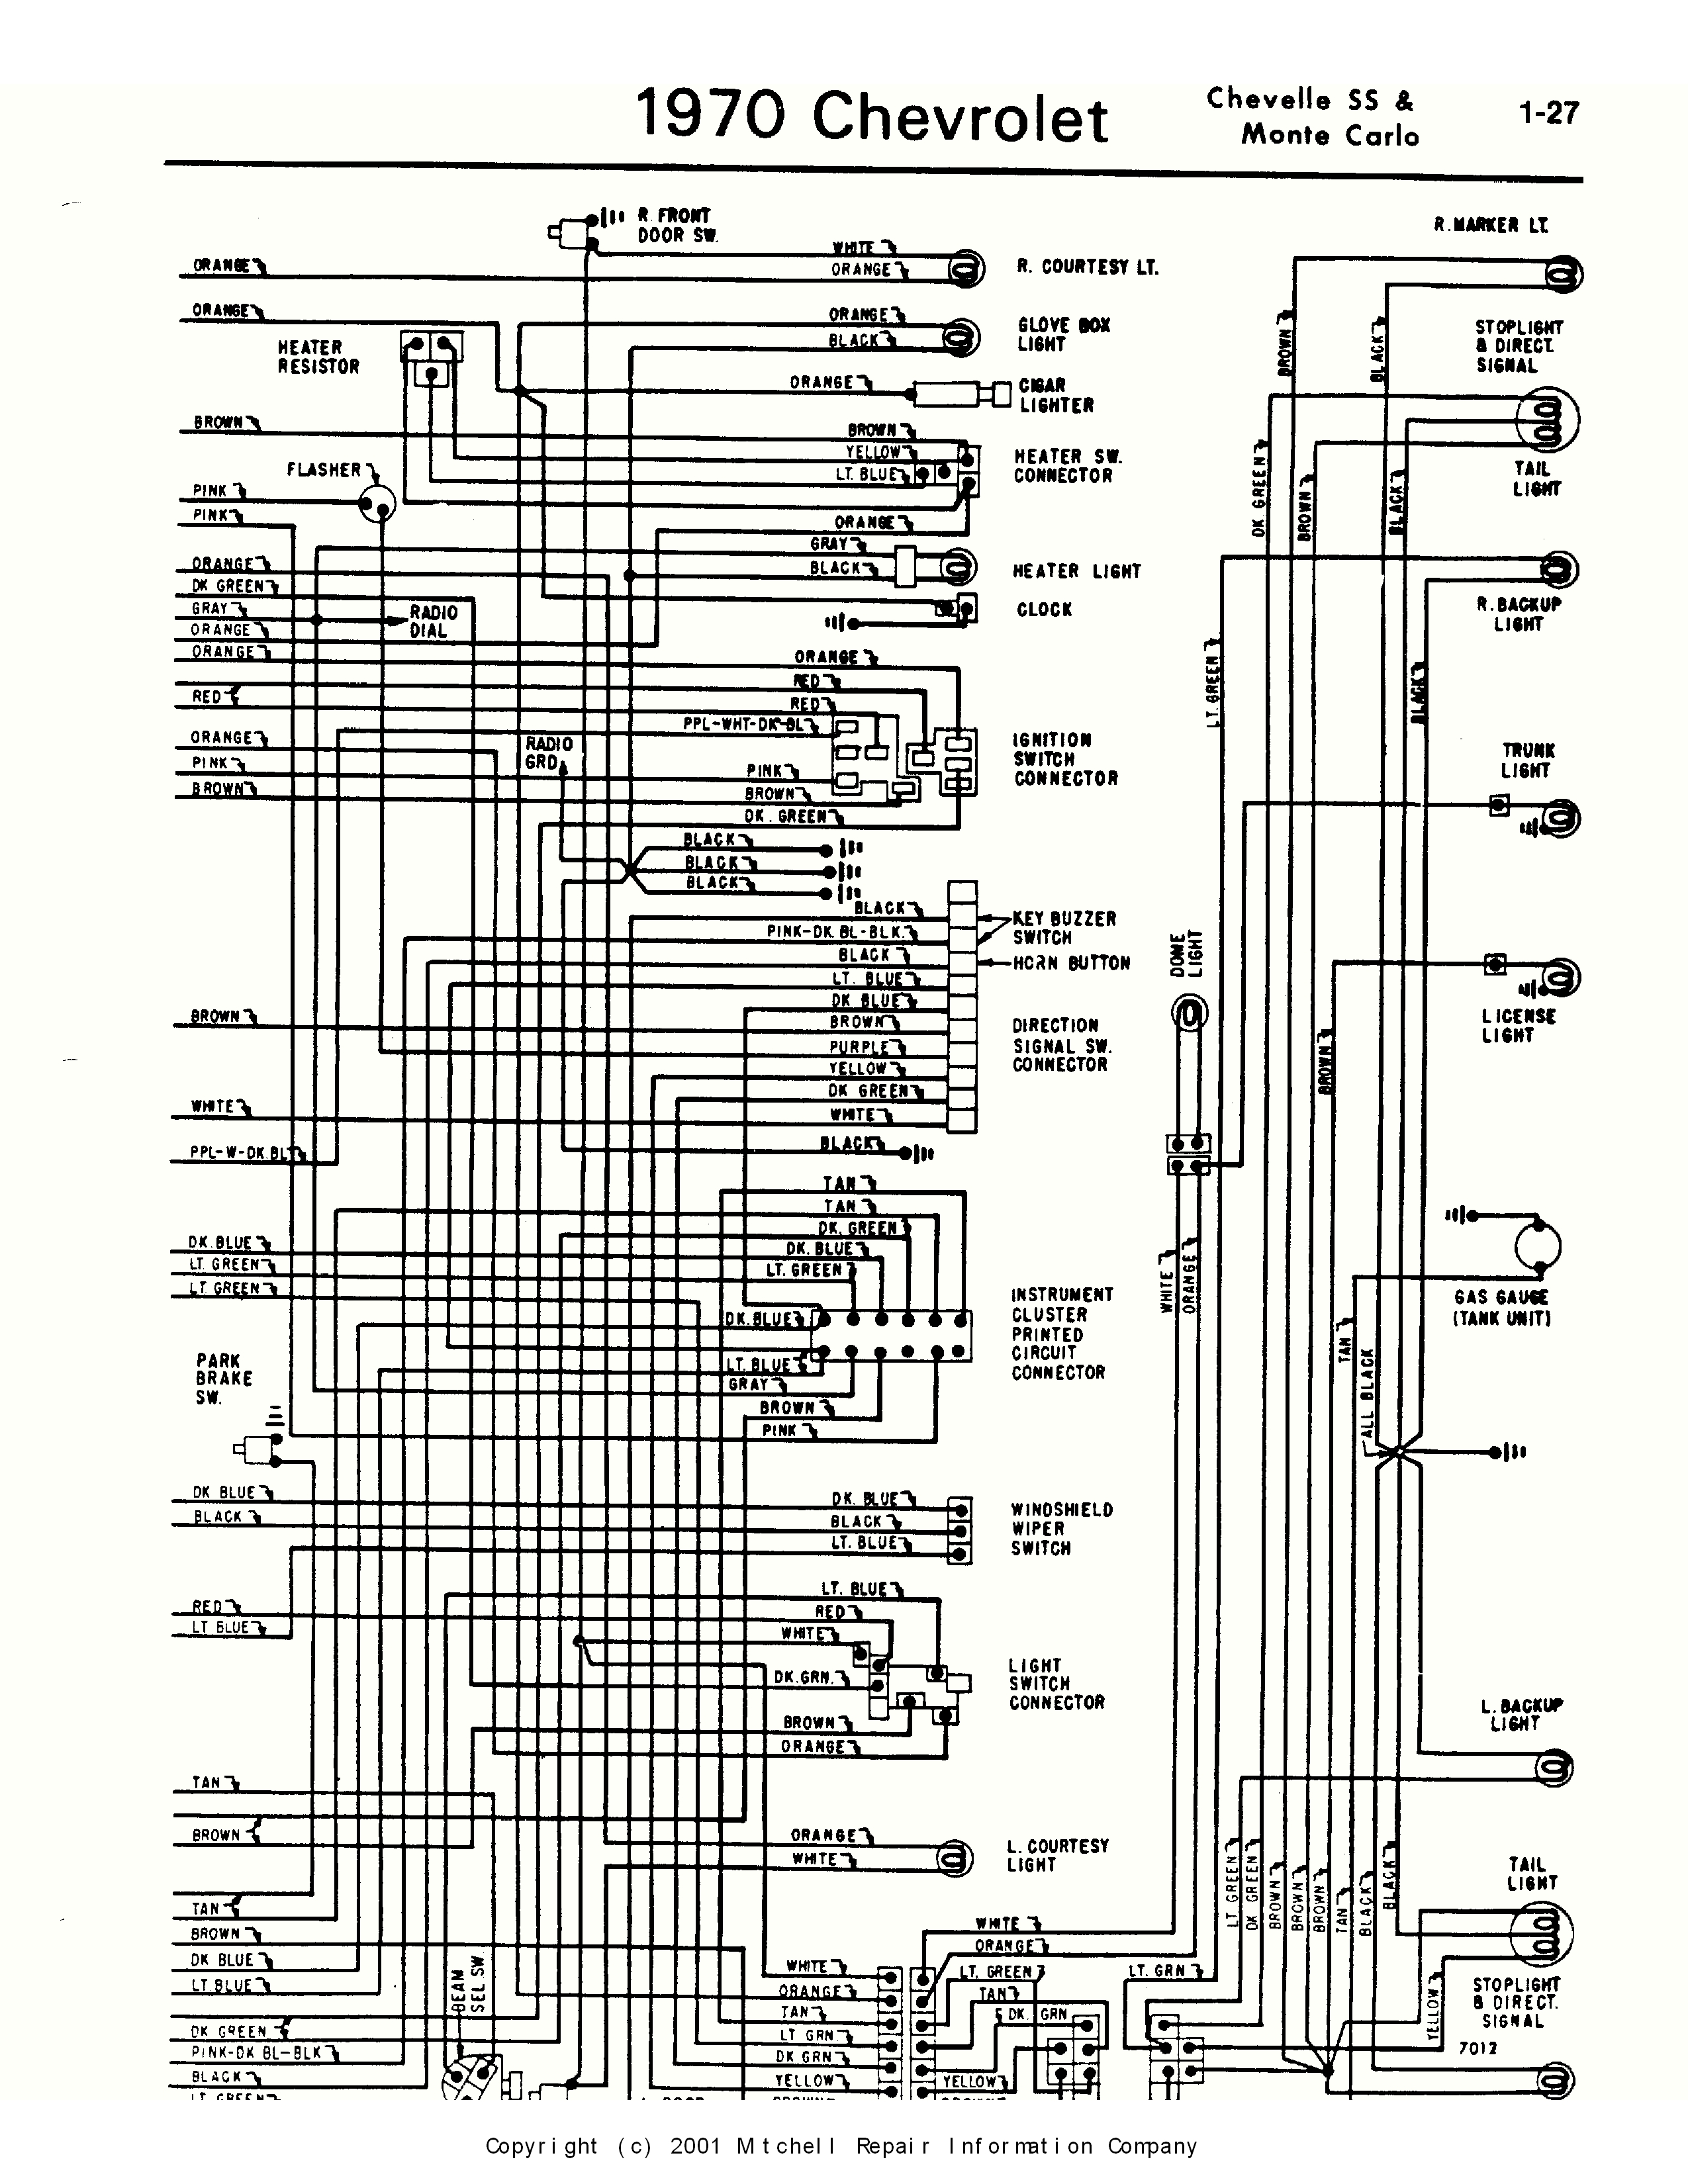 1972 Chevy El Camino Wiring Diagram Schematic Wiring Diagrams Database